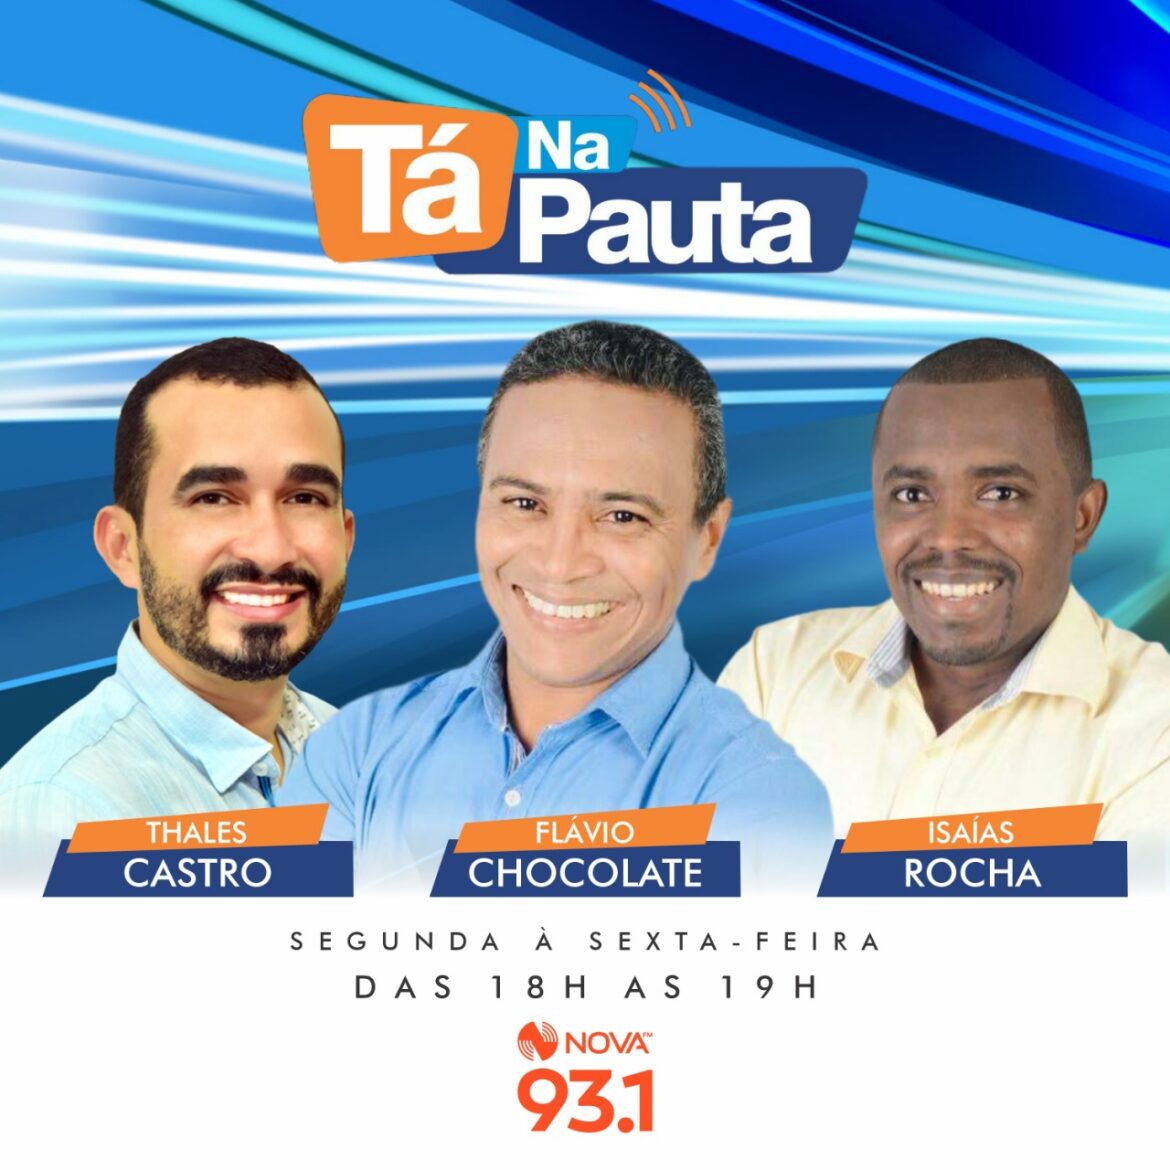 Programa “Tá na Pauta” estreia hoje na ‘Nova FM’ e nas plataformas digitais da emissora…